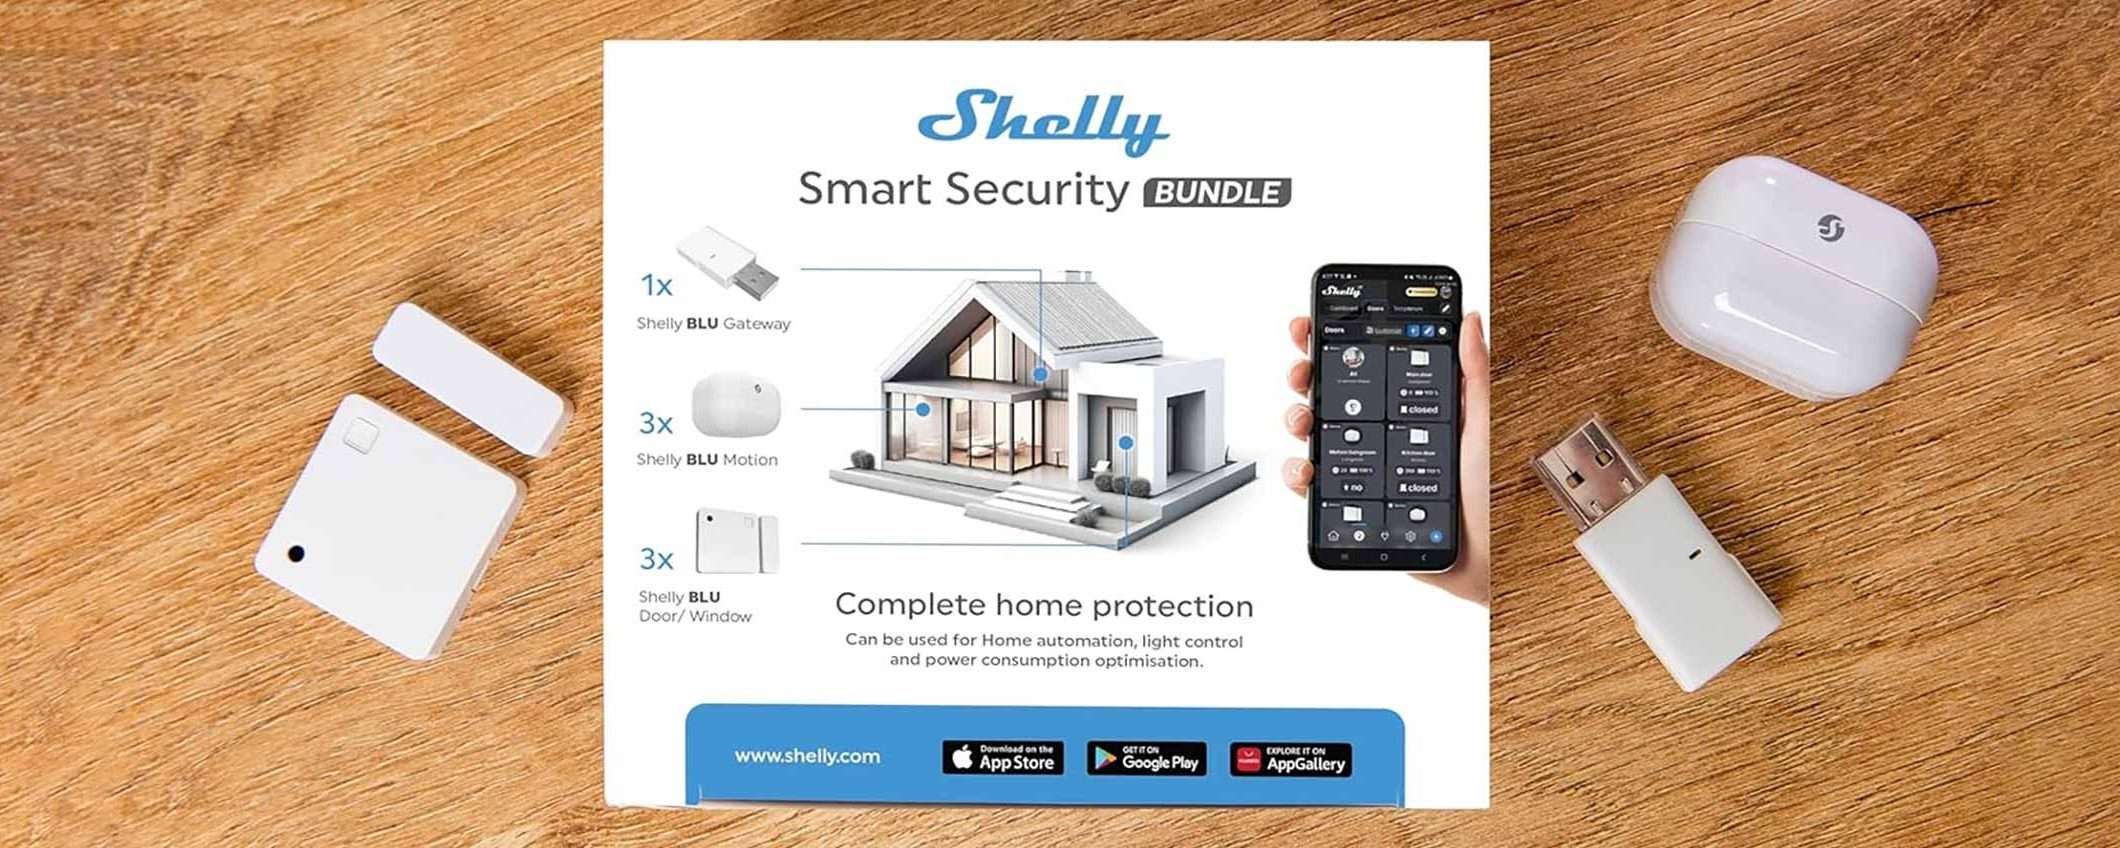 Casa al sicuro con Shelly Smart Blu Security Bundle (SCONTO)